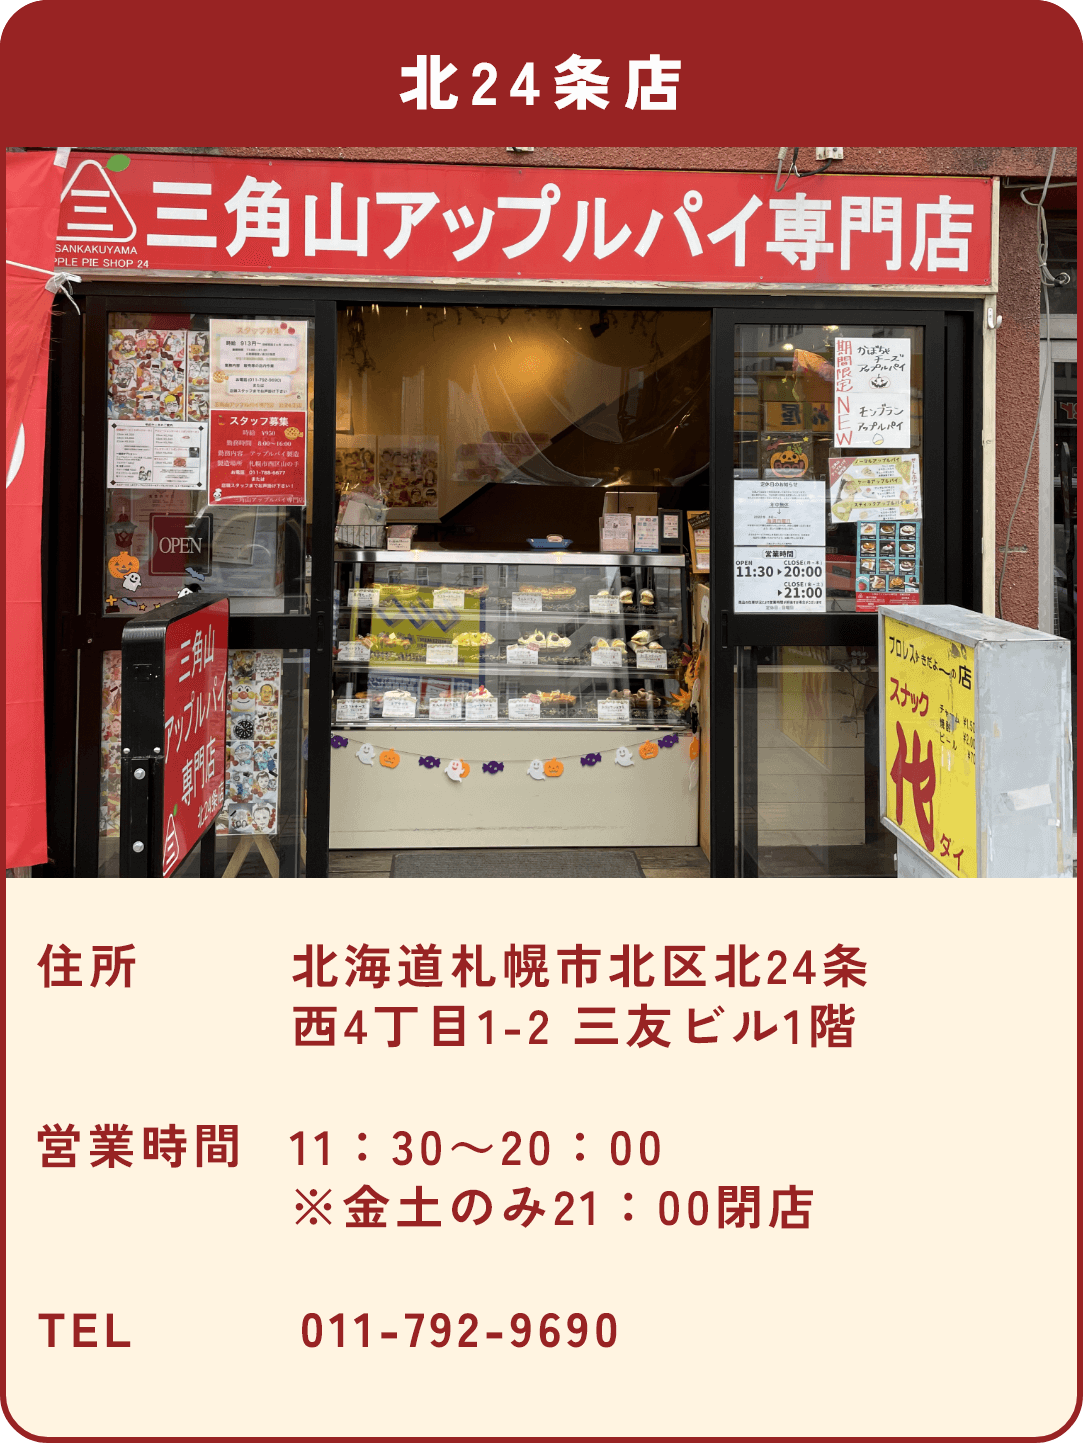 三角山アップルパイ専門店 北24条店